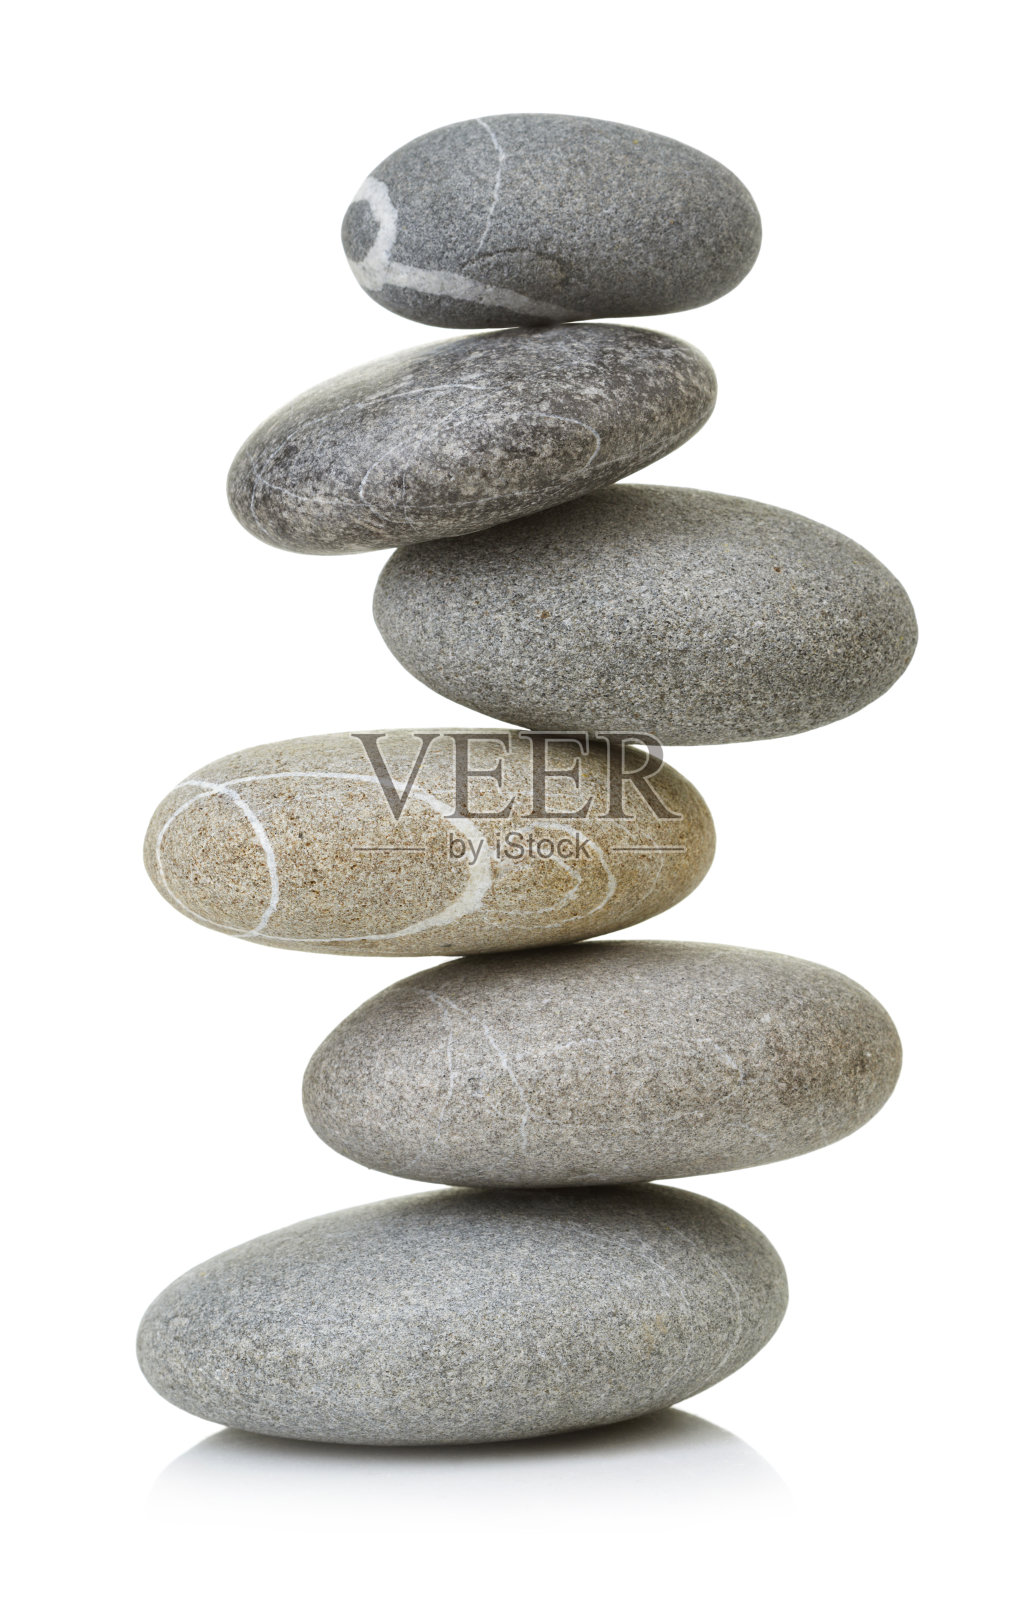 平衡的石头照片摄影图片